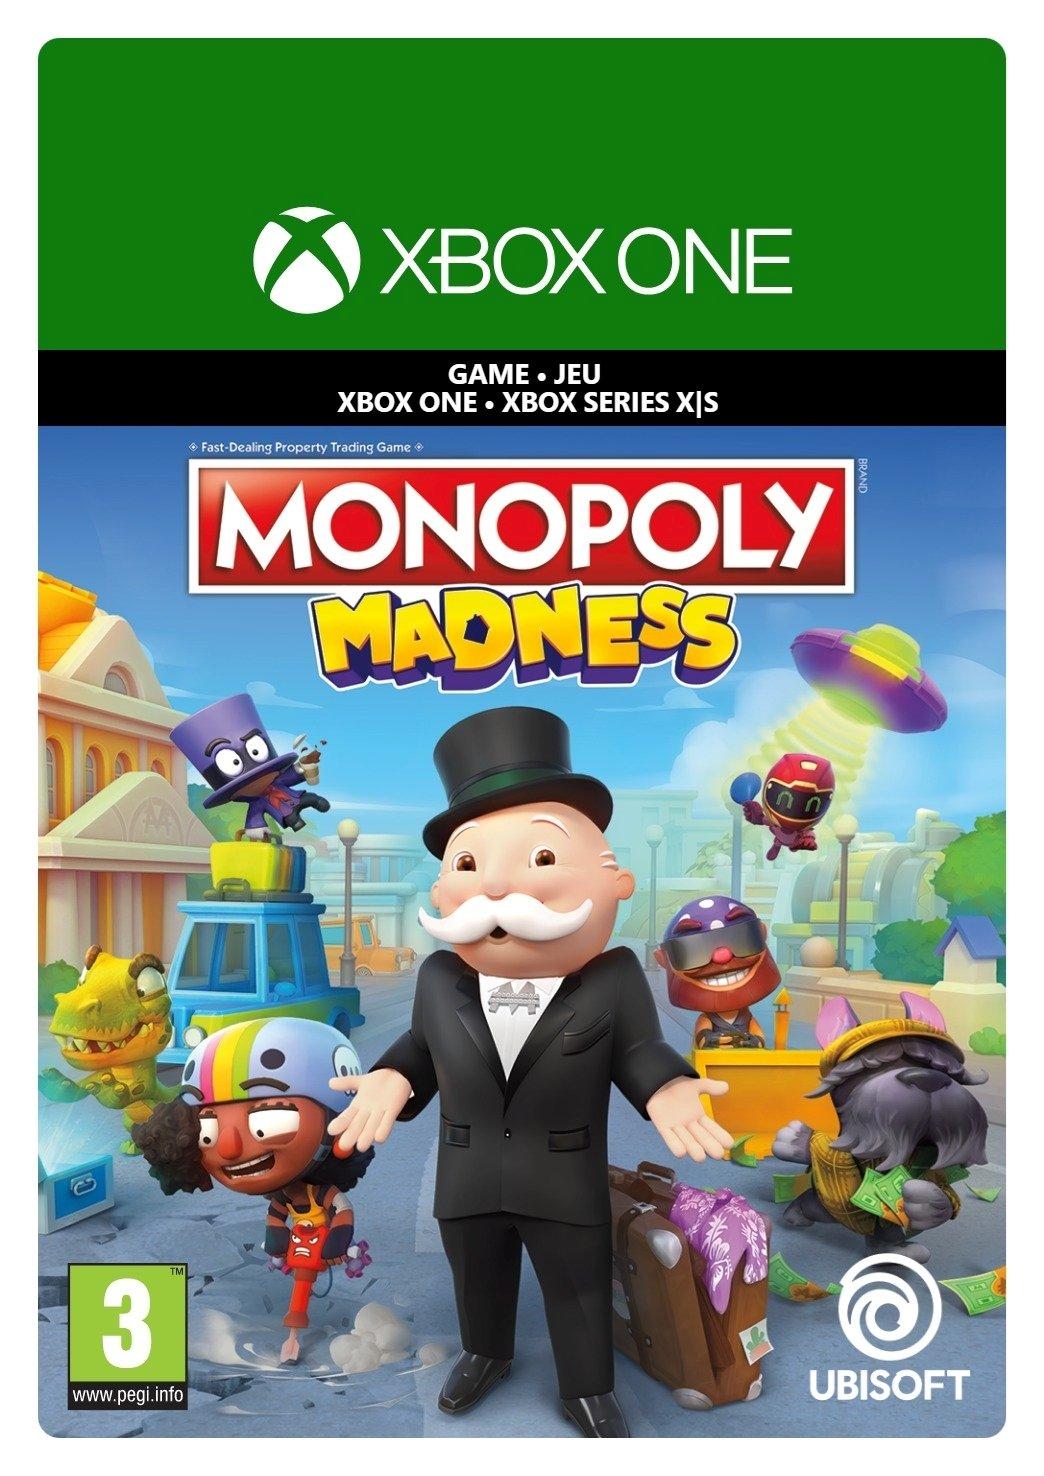 Monopoly Madness - Xbox One - Game | G3Q-01271 (d4b90a39-87b2-7d4f-90a9-a0a991f9771d)